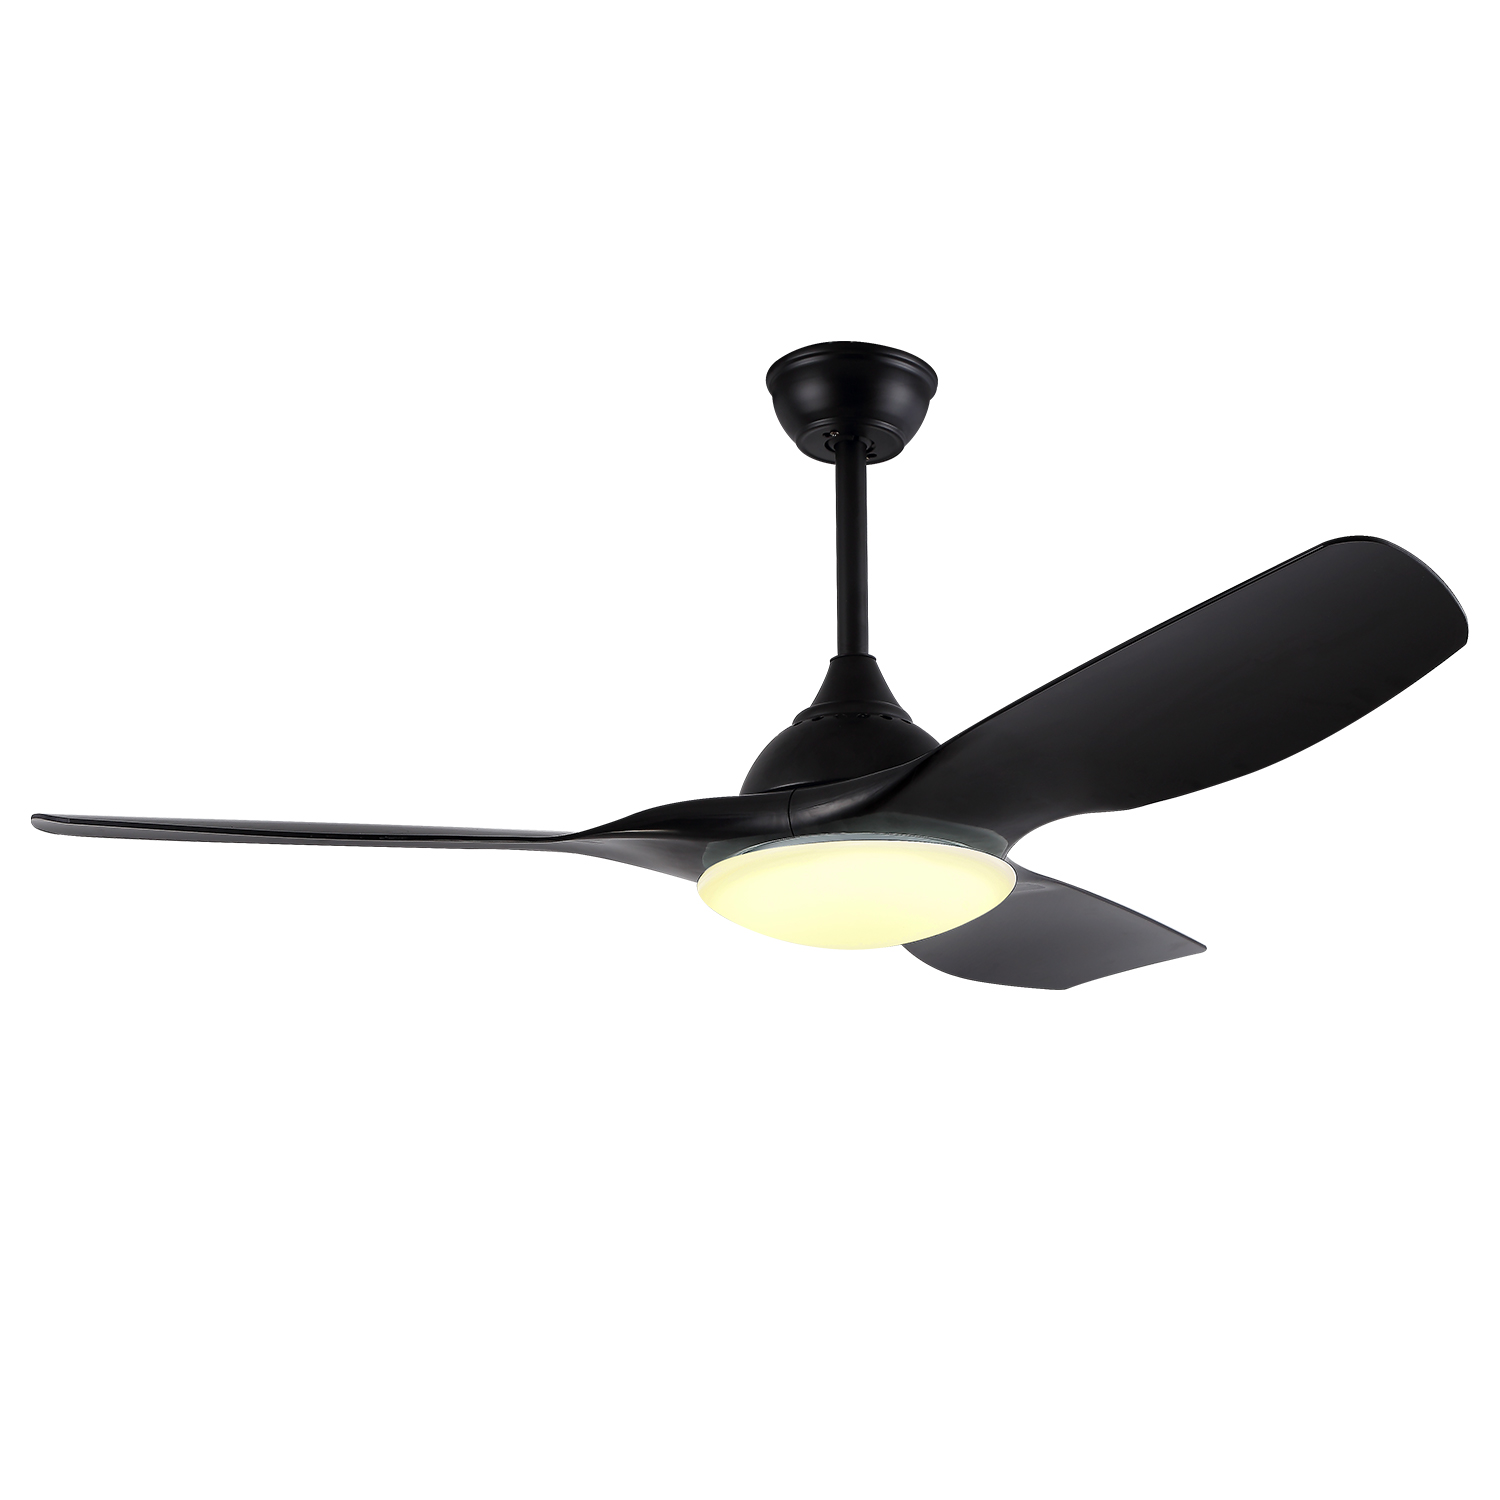 Moderni Simple Cieling Tuulettimet 3 ABS-lapaa tuulettimen valo kattoon Dc Bldc kattotuuletin valolla ja kaukosäätimellä